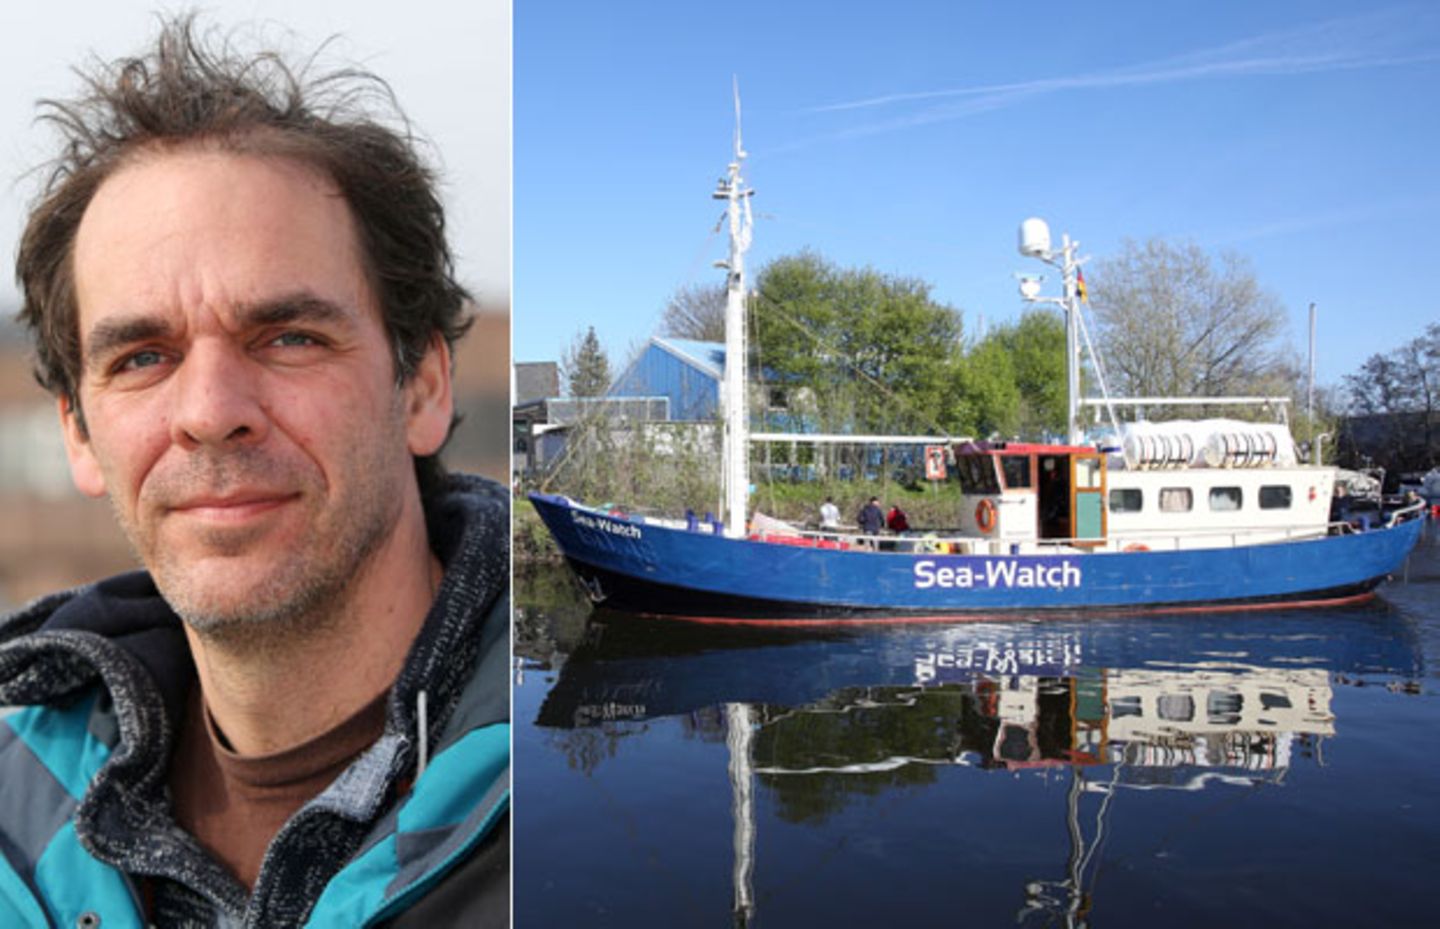 Einer, der nicht bloß zusieht: Wie Harald Höppner Flüchtlinge in Seenot rettet